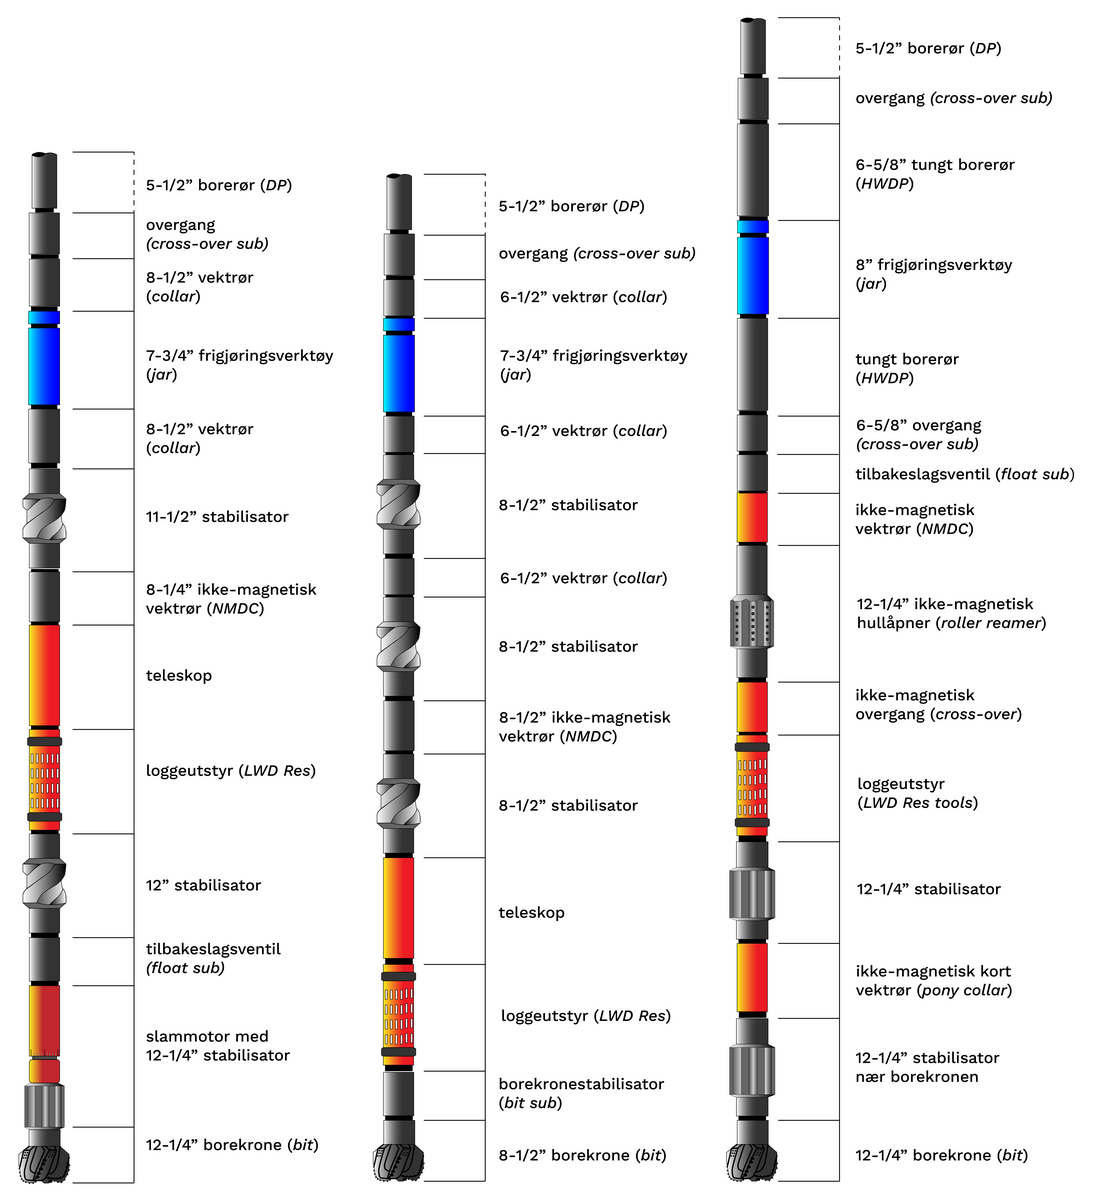 Tre eksempler på borestrenger er skissert. Alle tre består av en borekrone nederst, samt flere borerør, vektrør, stabilisatorer og overganger. Nevneverdige tilleggskomponenter er loggeutstyr, frigjøringsverktøy, teleskop og slammotor. De tre strengene er tilpasset ulike formål, og varierer i lengde, diameter, og konfigurasjon.